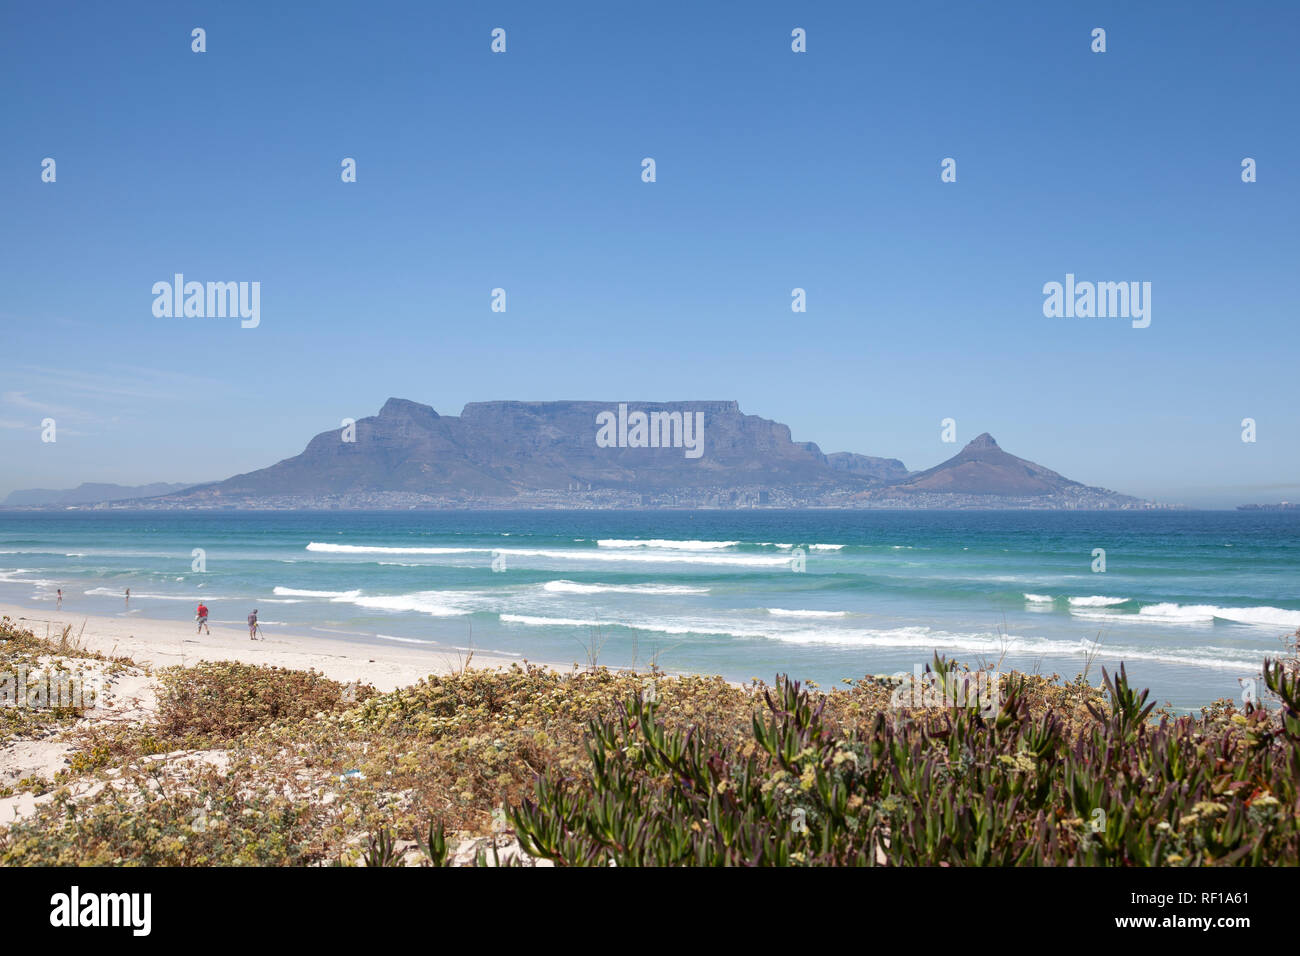 Vue de la Table Mountain sur Table Bay de Bloubergstrand, Cape Town - Afrique du Sud Banque D'Images